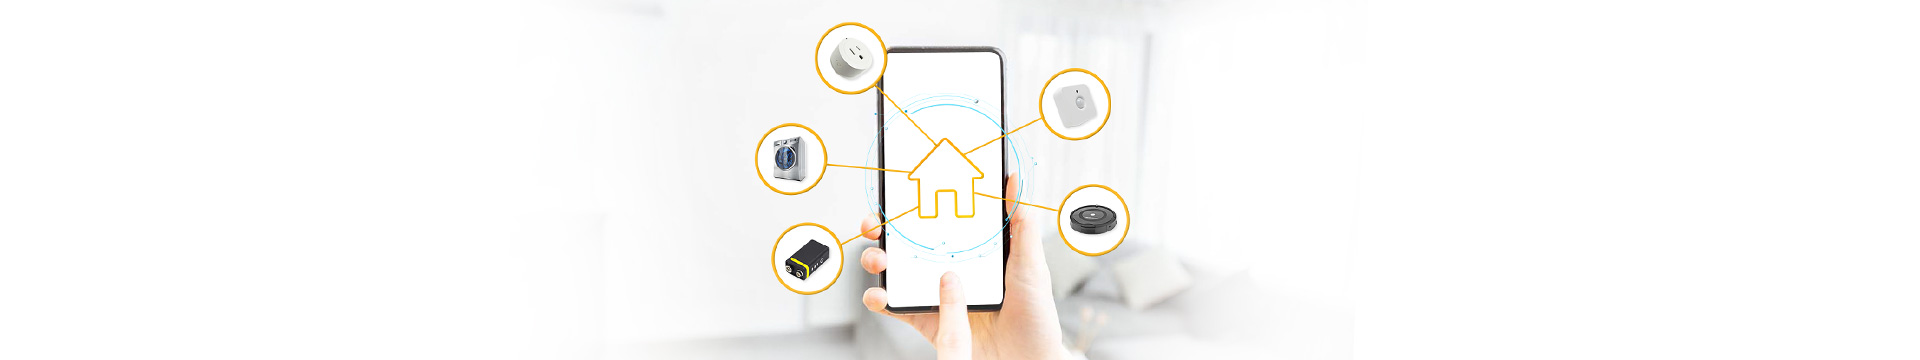 เปลี่ยนบ้านหลังเก่า ให้เป็น Smart Home สุดคูลด้วย 5 อุปกรณ์สุดล้ำ